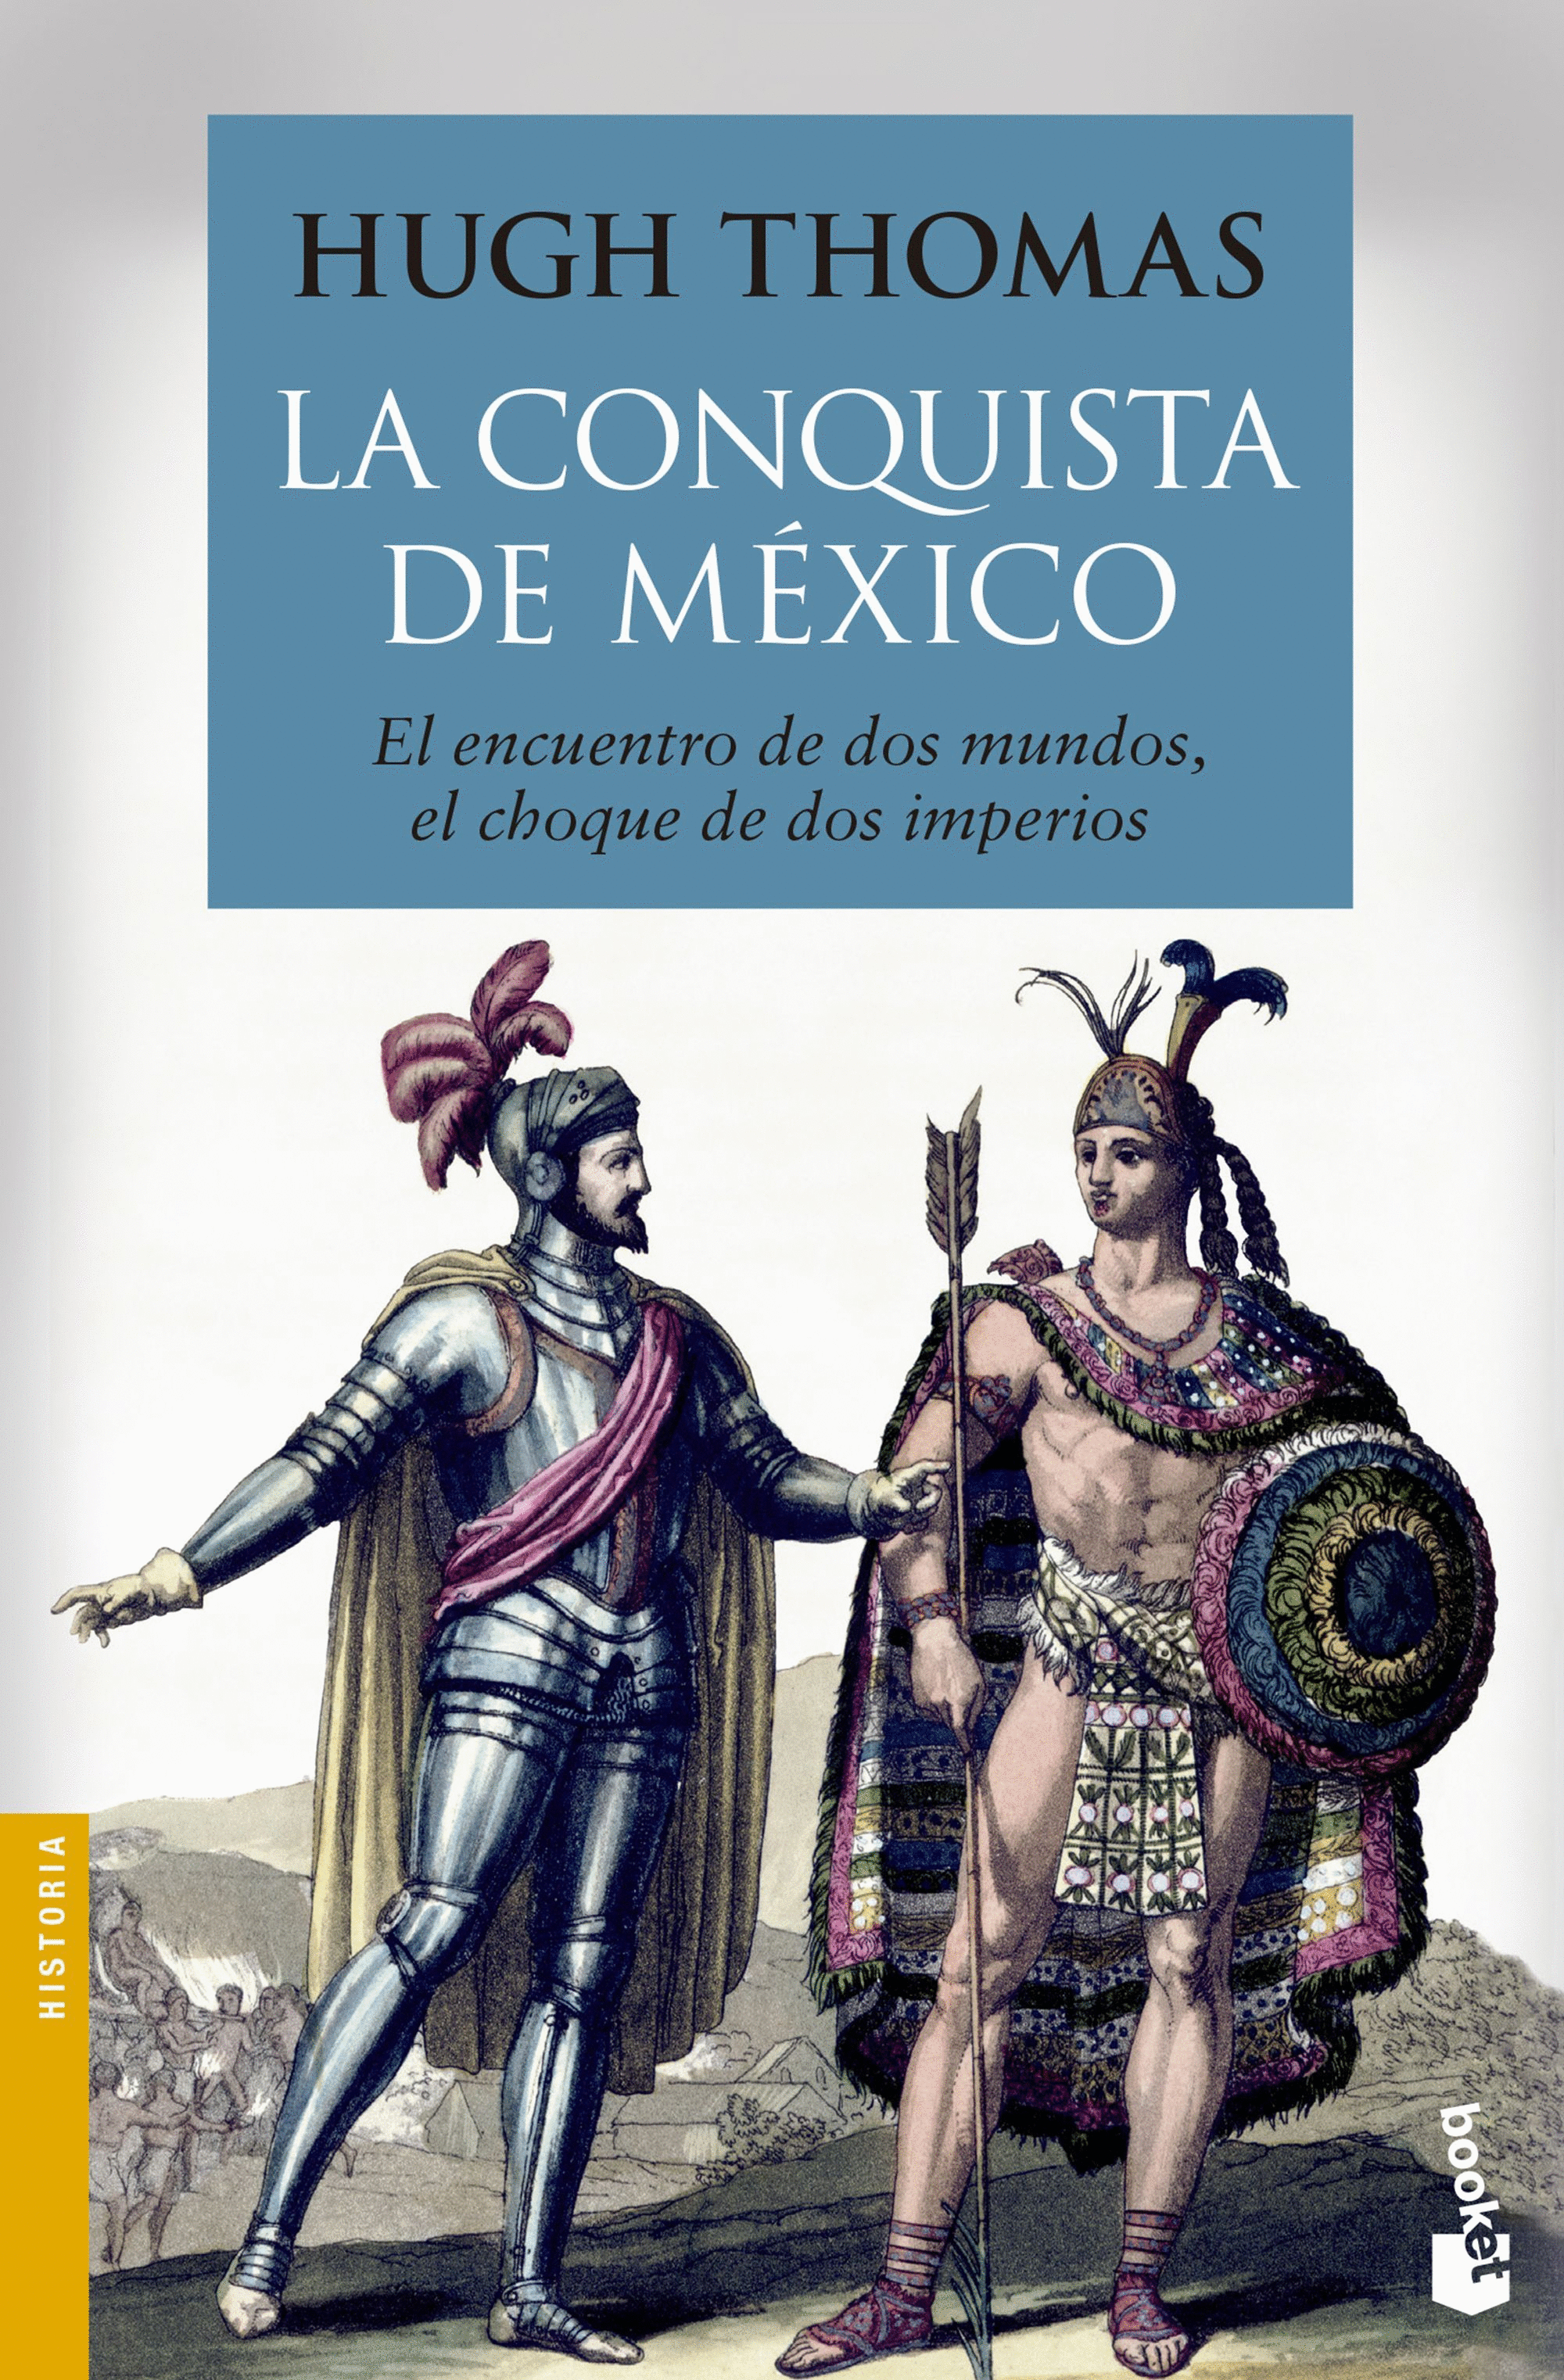 Libro Decorativo | México